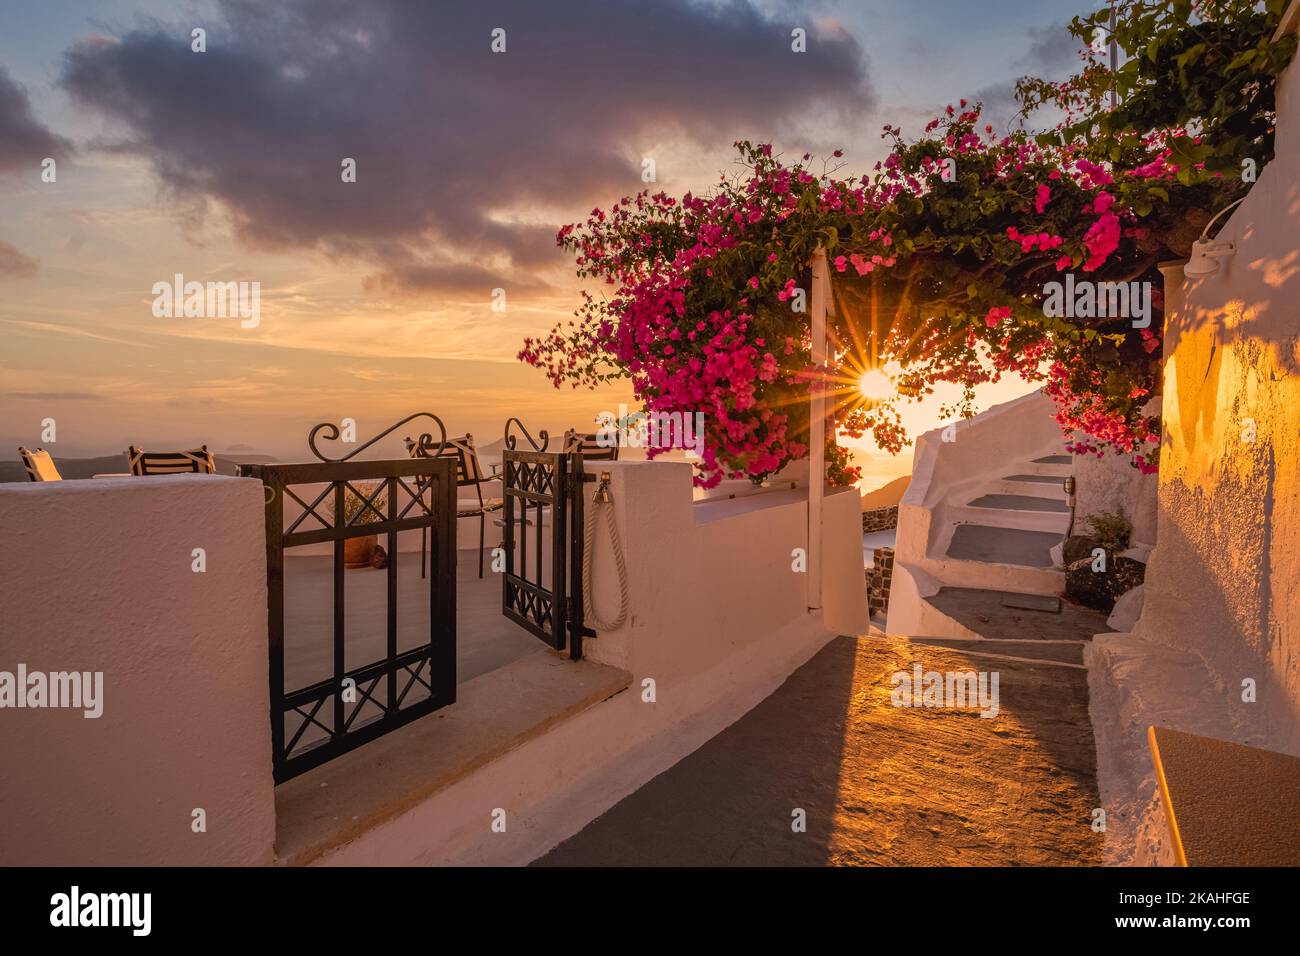 Été coucher de soleil vacances pittoresque de luxe célèbre destination Europe. Architecture blanche à Santorin, Grèce. Paysage de voyage époustouflant avec des fleurs roses Banque D'Images